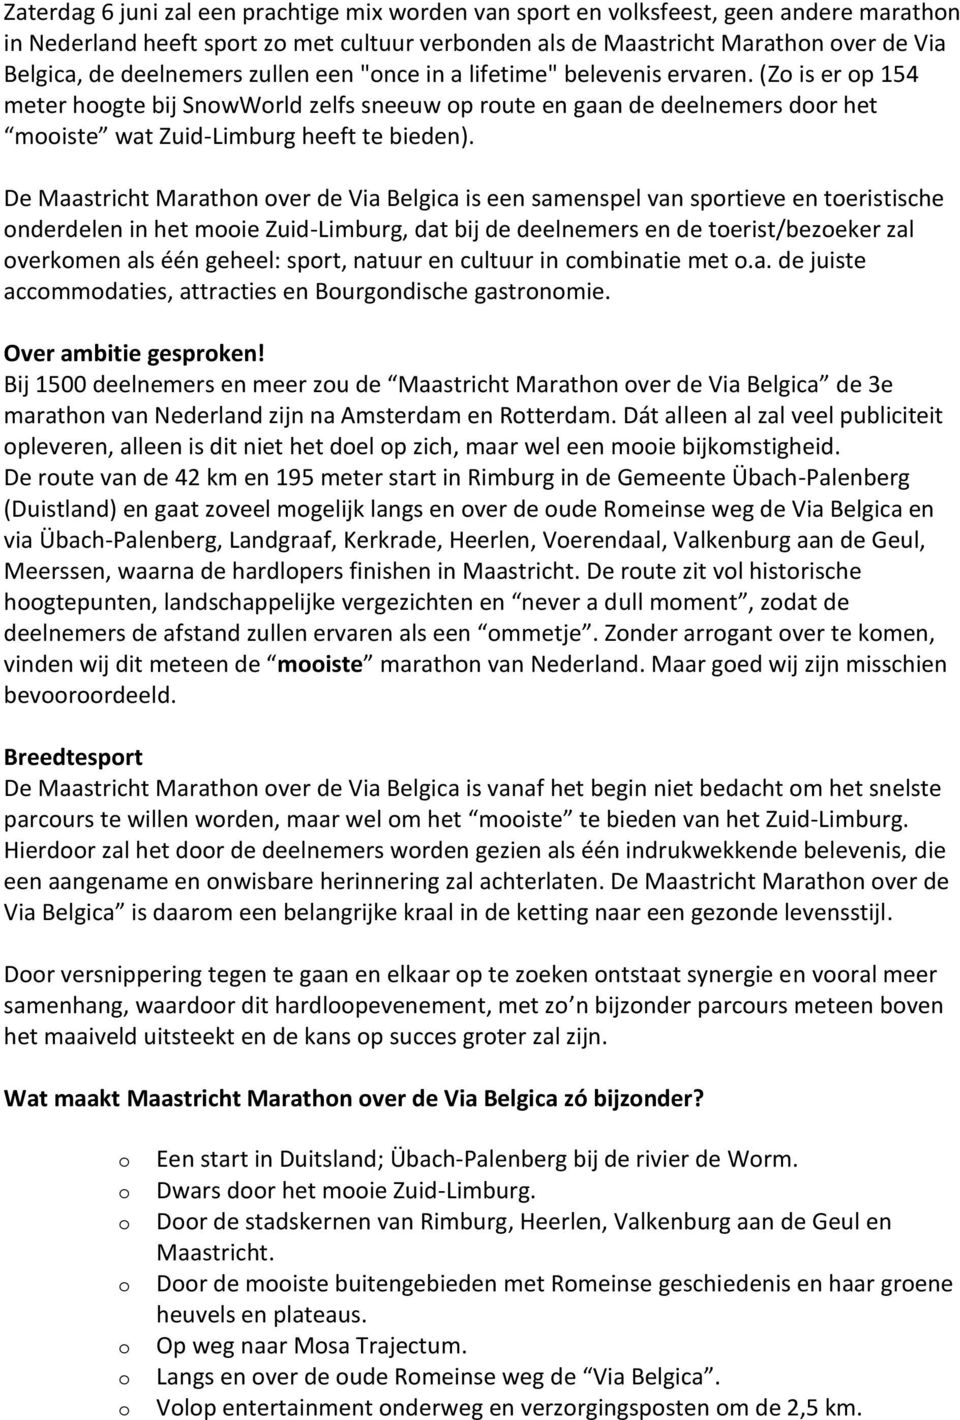 De Maastricht Marathn ver de Via Belgica is een samenspel van sprtieve en teristische nderdelen in het mie Zuid-Limburg, dat bij de deelnemers en de terist/bezeker zal verkmen als één geheel: sprt,